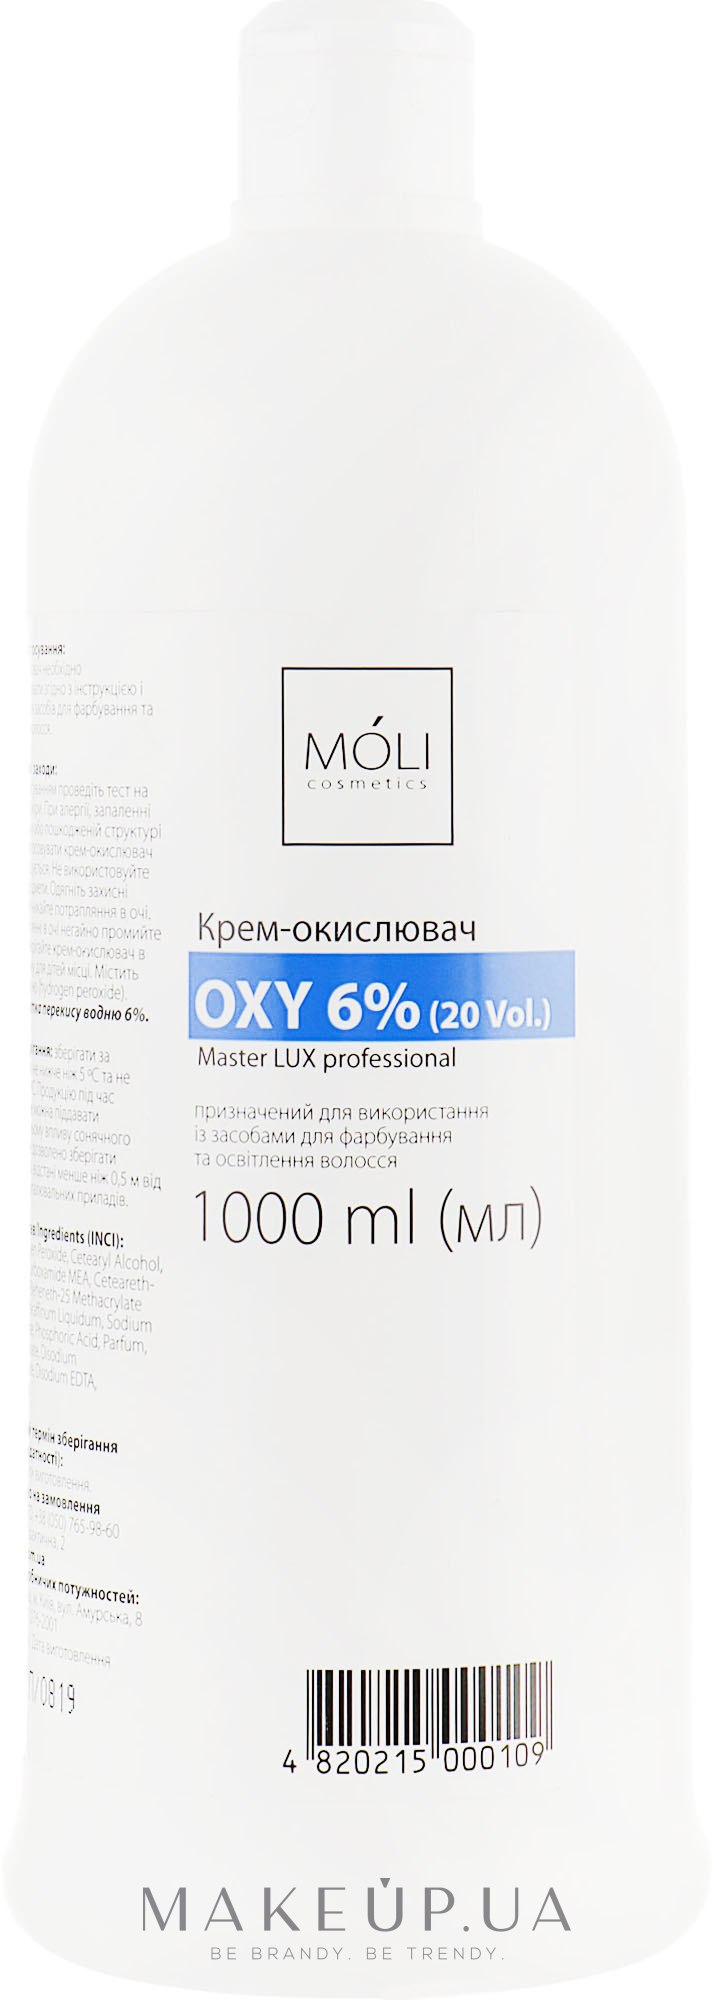 Окислительная эмульсия 6% - Moli Cosmetics Oxy 6% (20 Vol.) — фото 1000ml